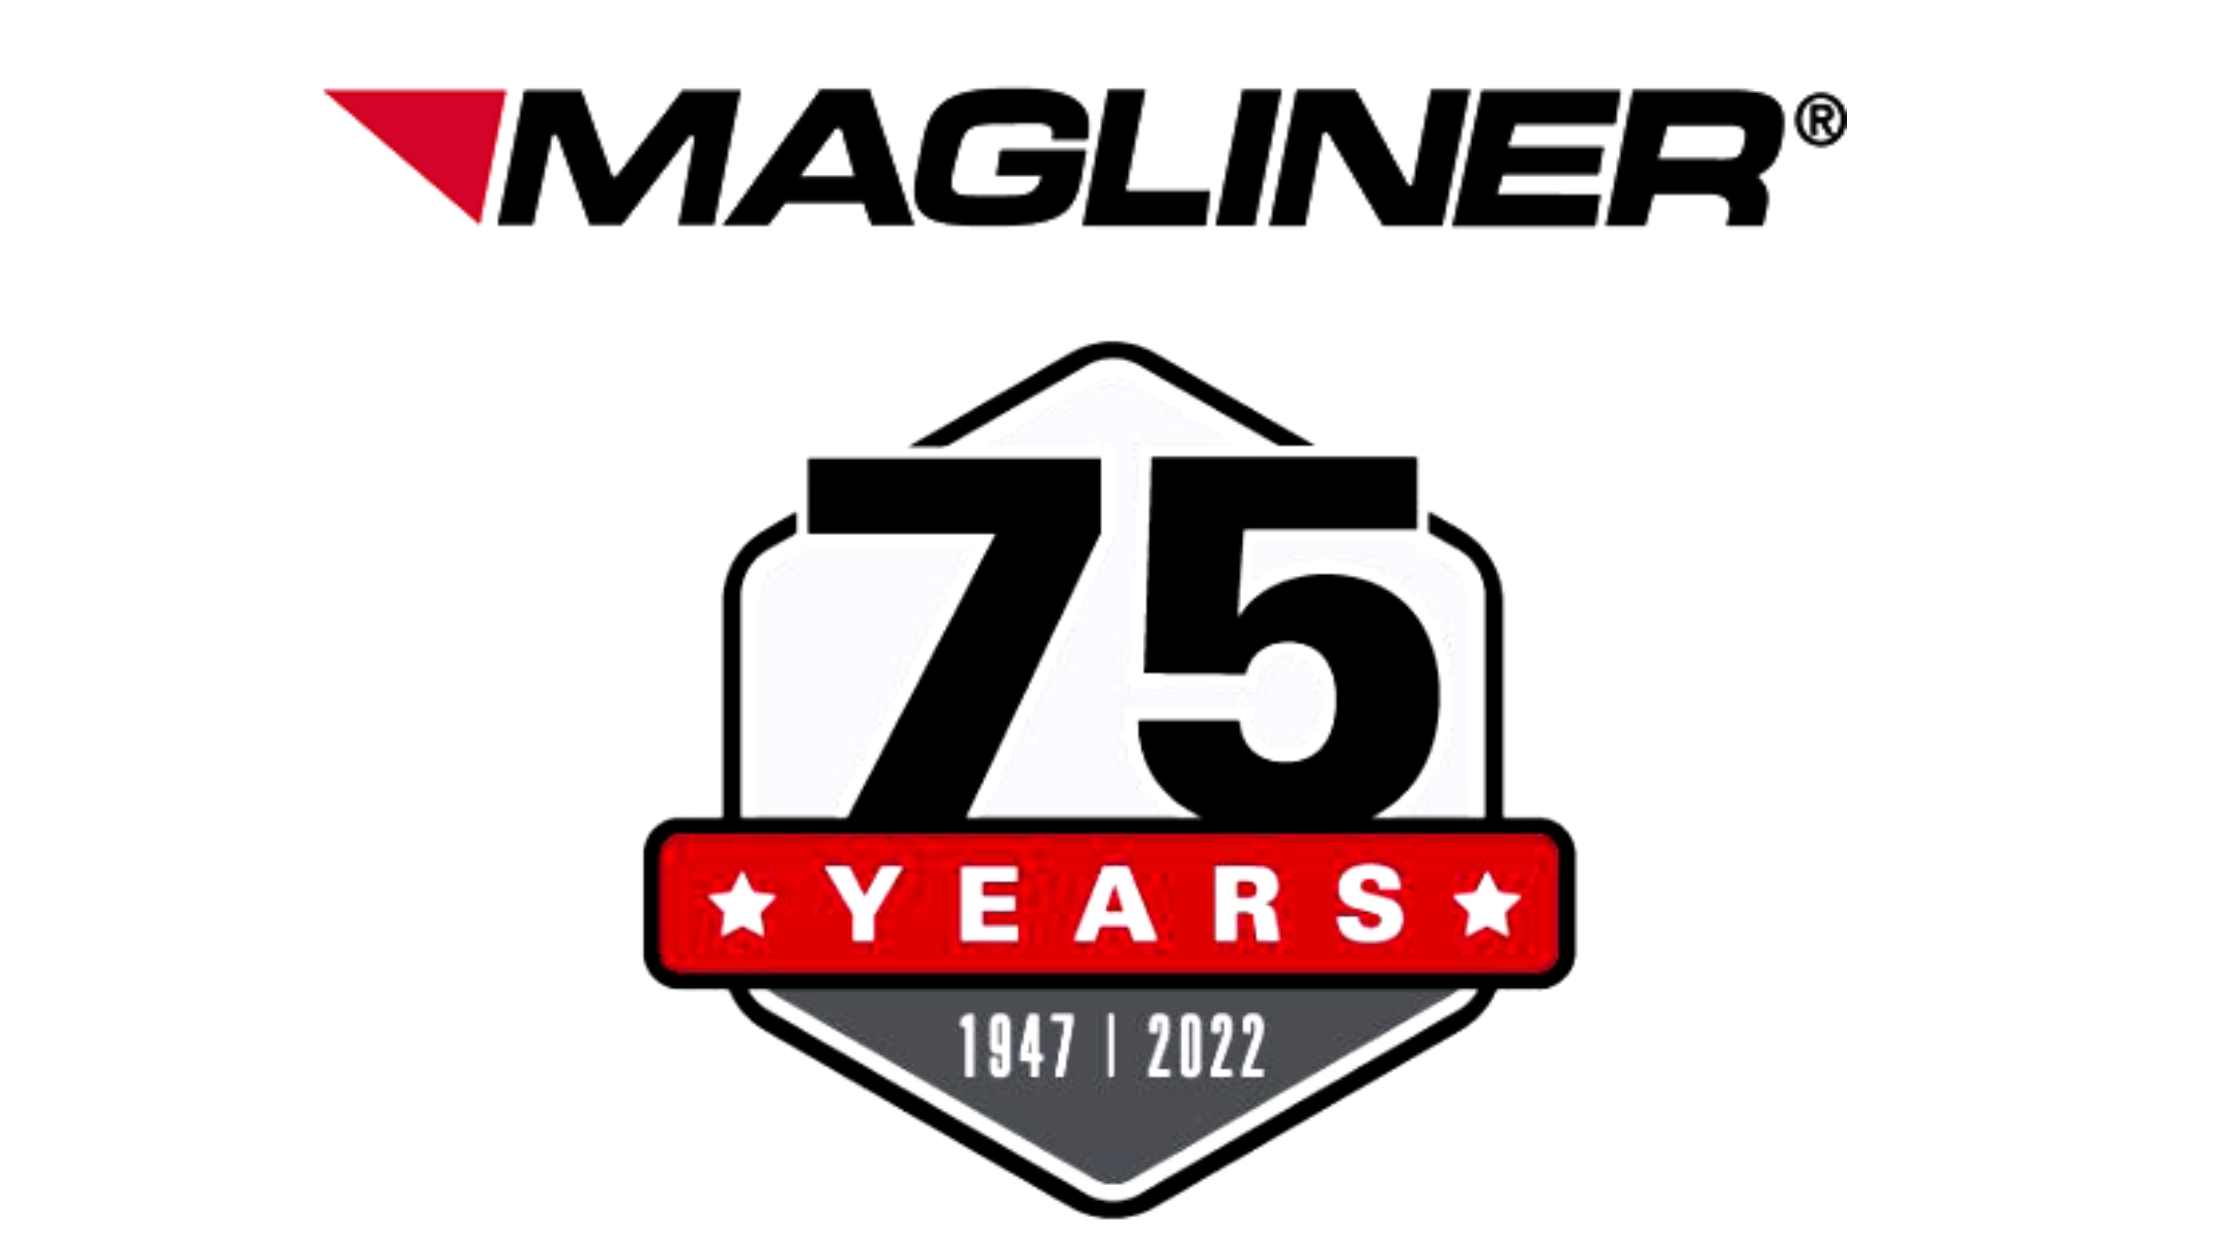 Magliner carretillas de mano 75 años de innovación y calidad